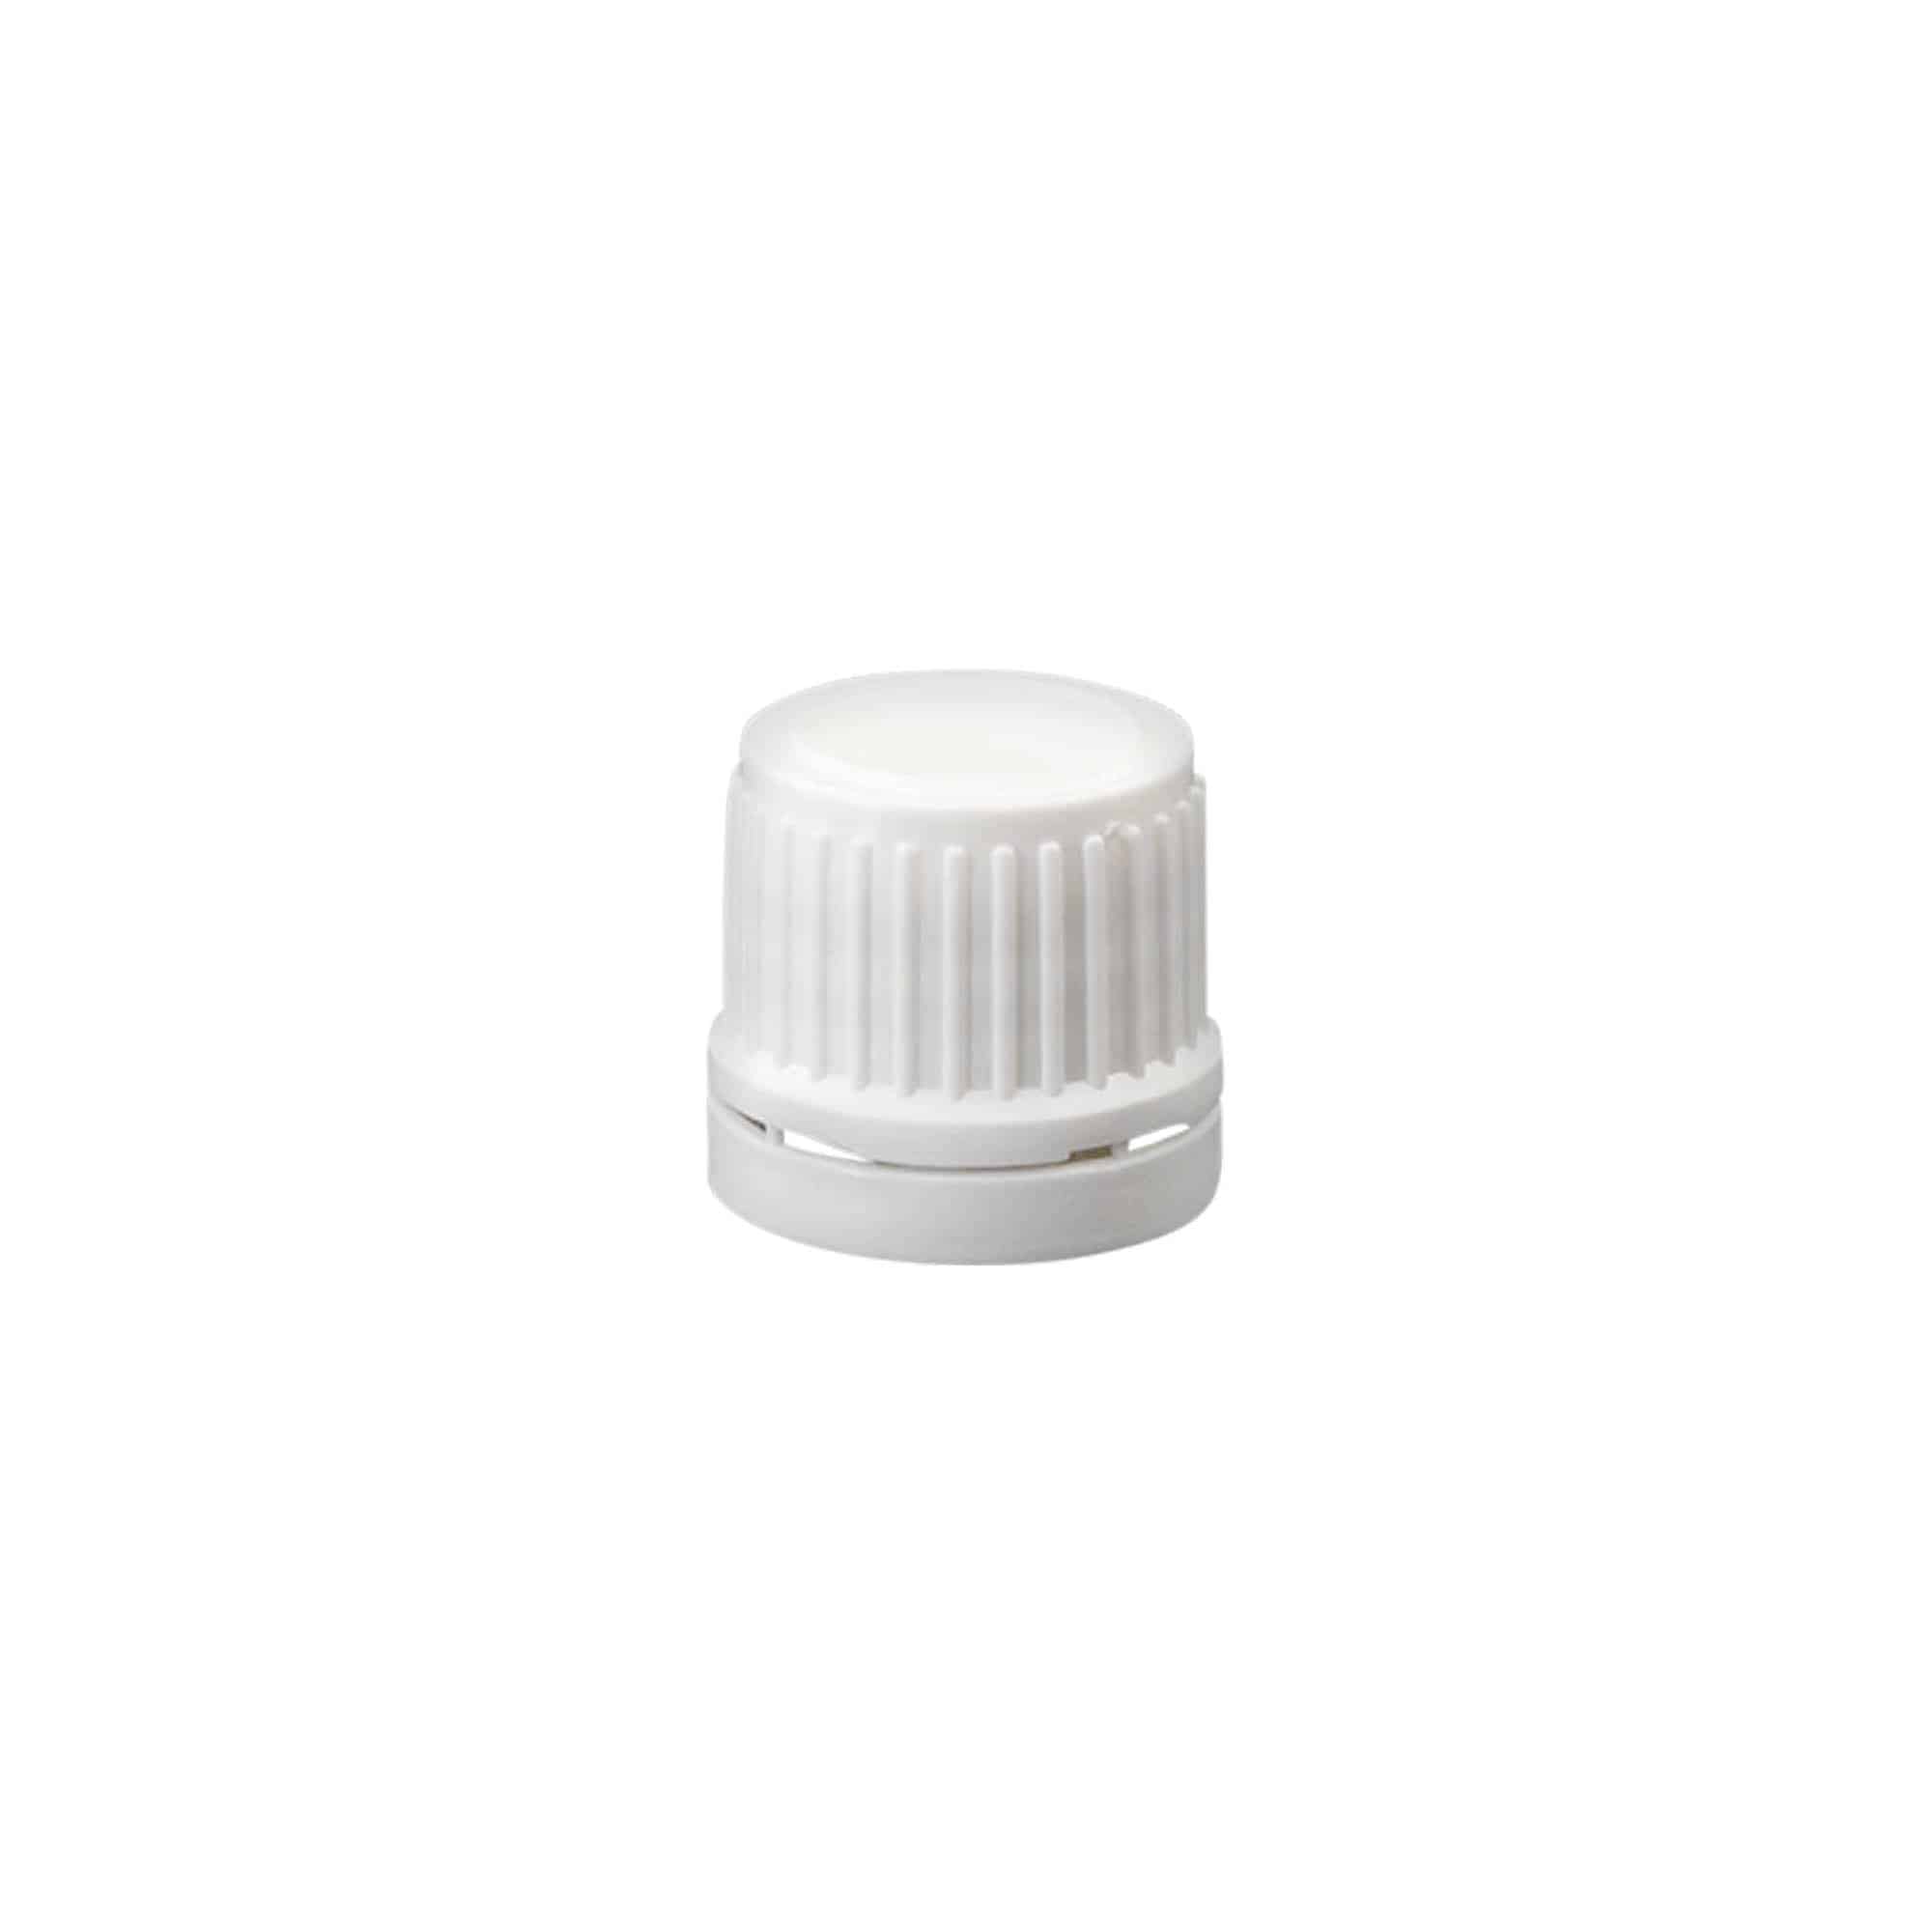 Šroubovací uzávěr s trhacím kroužkem, plast PE, bílý, pro ústí: DIN 18